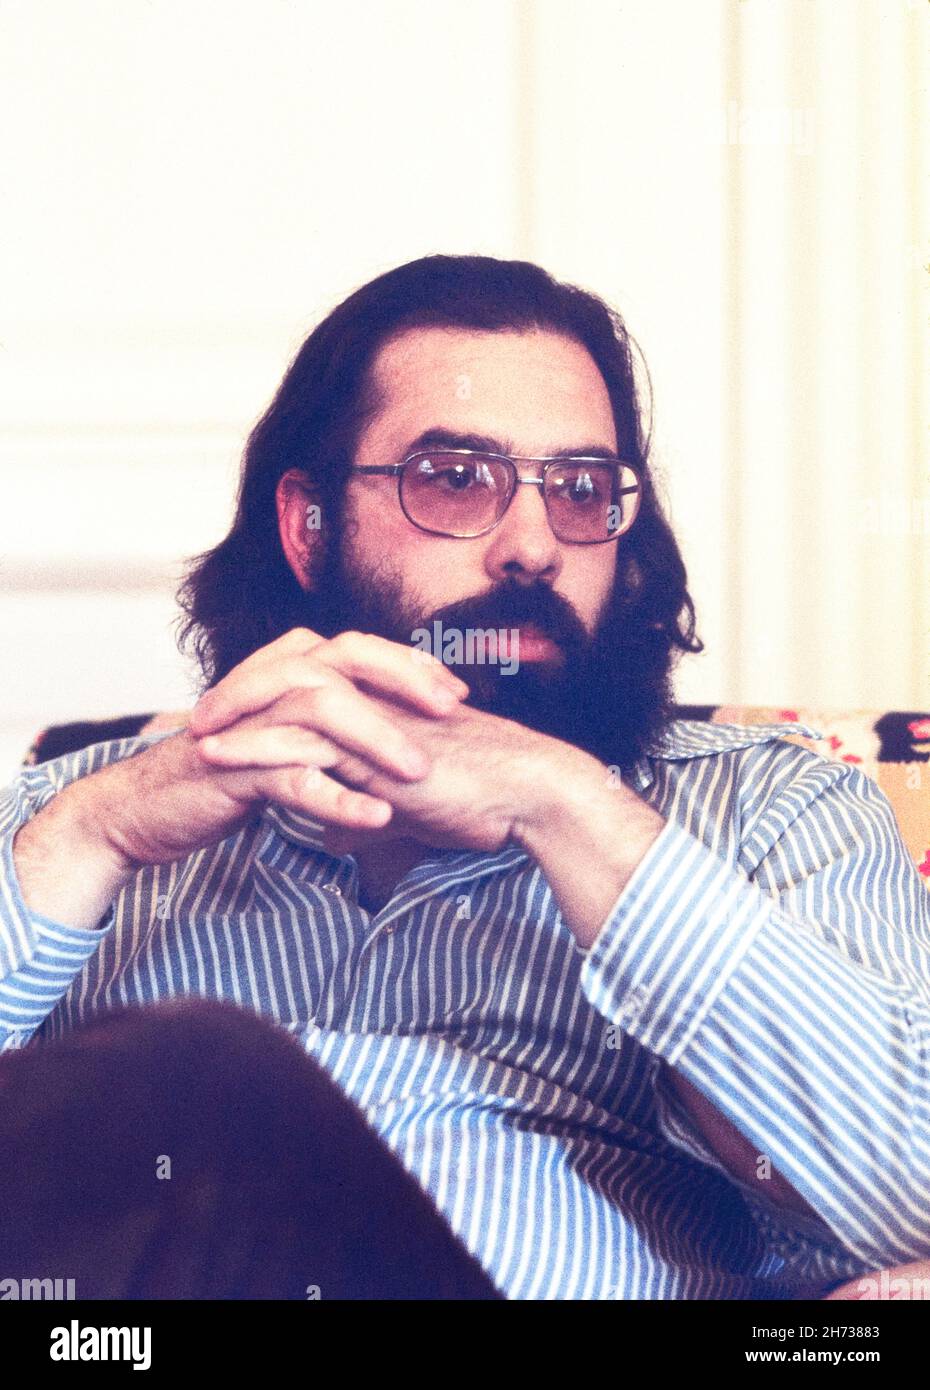 Francis Ford Coppola, amerikanischer Filmregisseur, Produzent und Drehbuchautor, halblanges Portrait, Bernard Gotfryd, 1973 Stockfoto